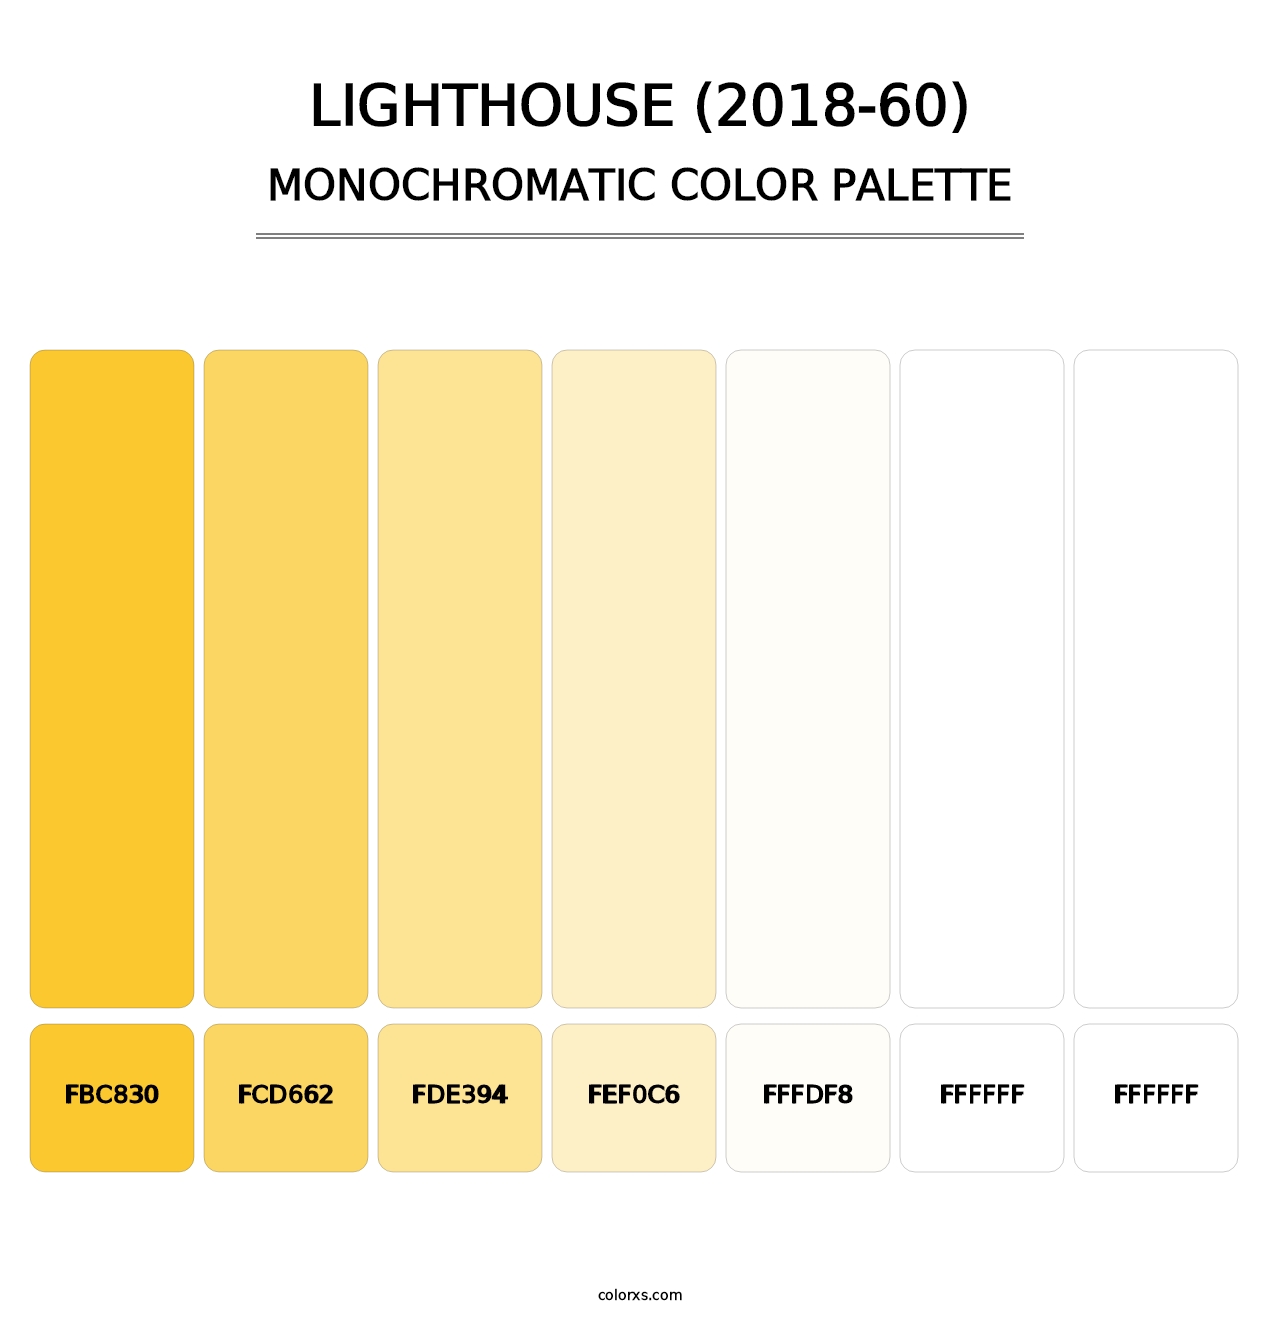 Lighthouse (2018-60) - Monochromatic Color Palette